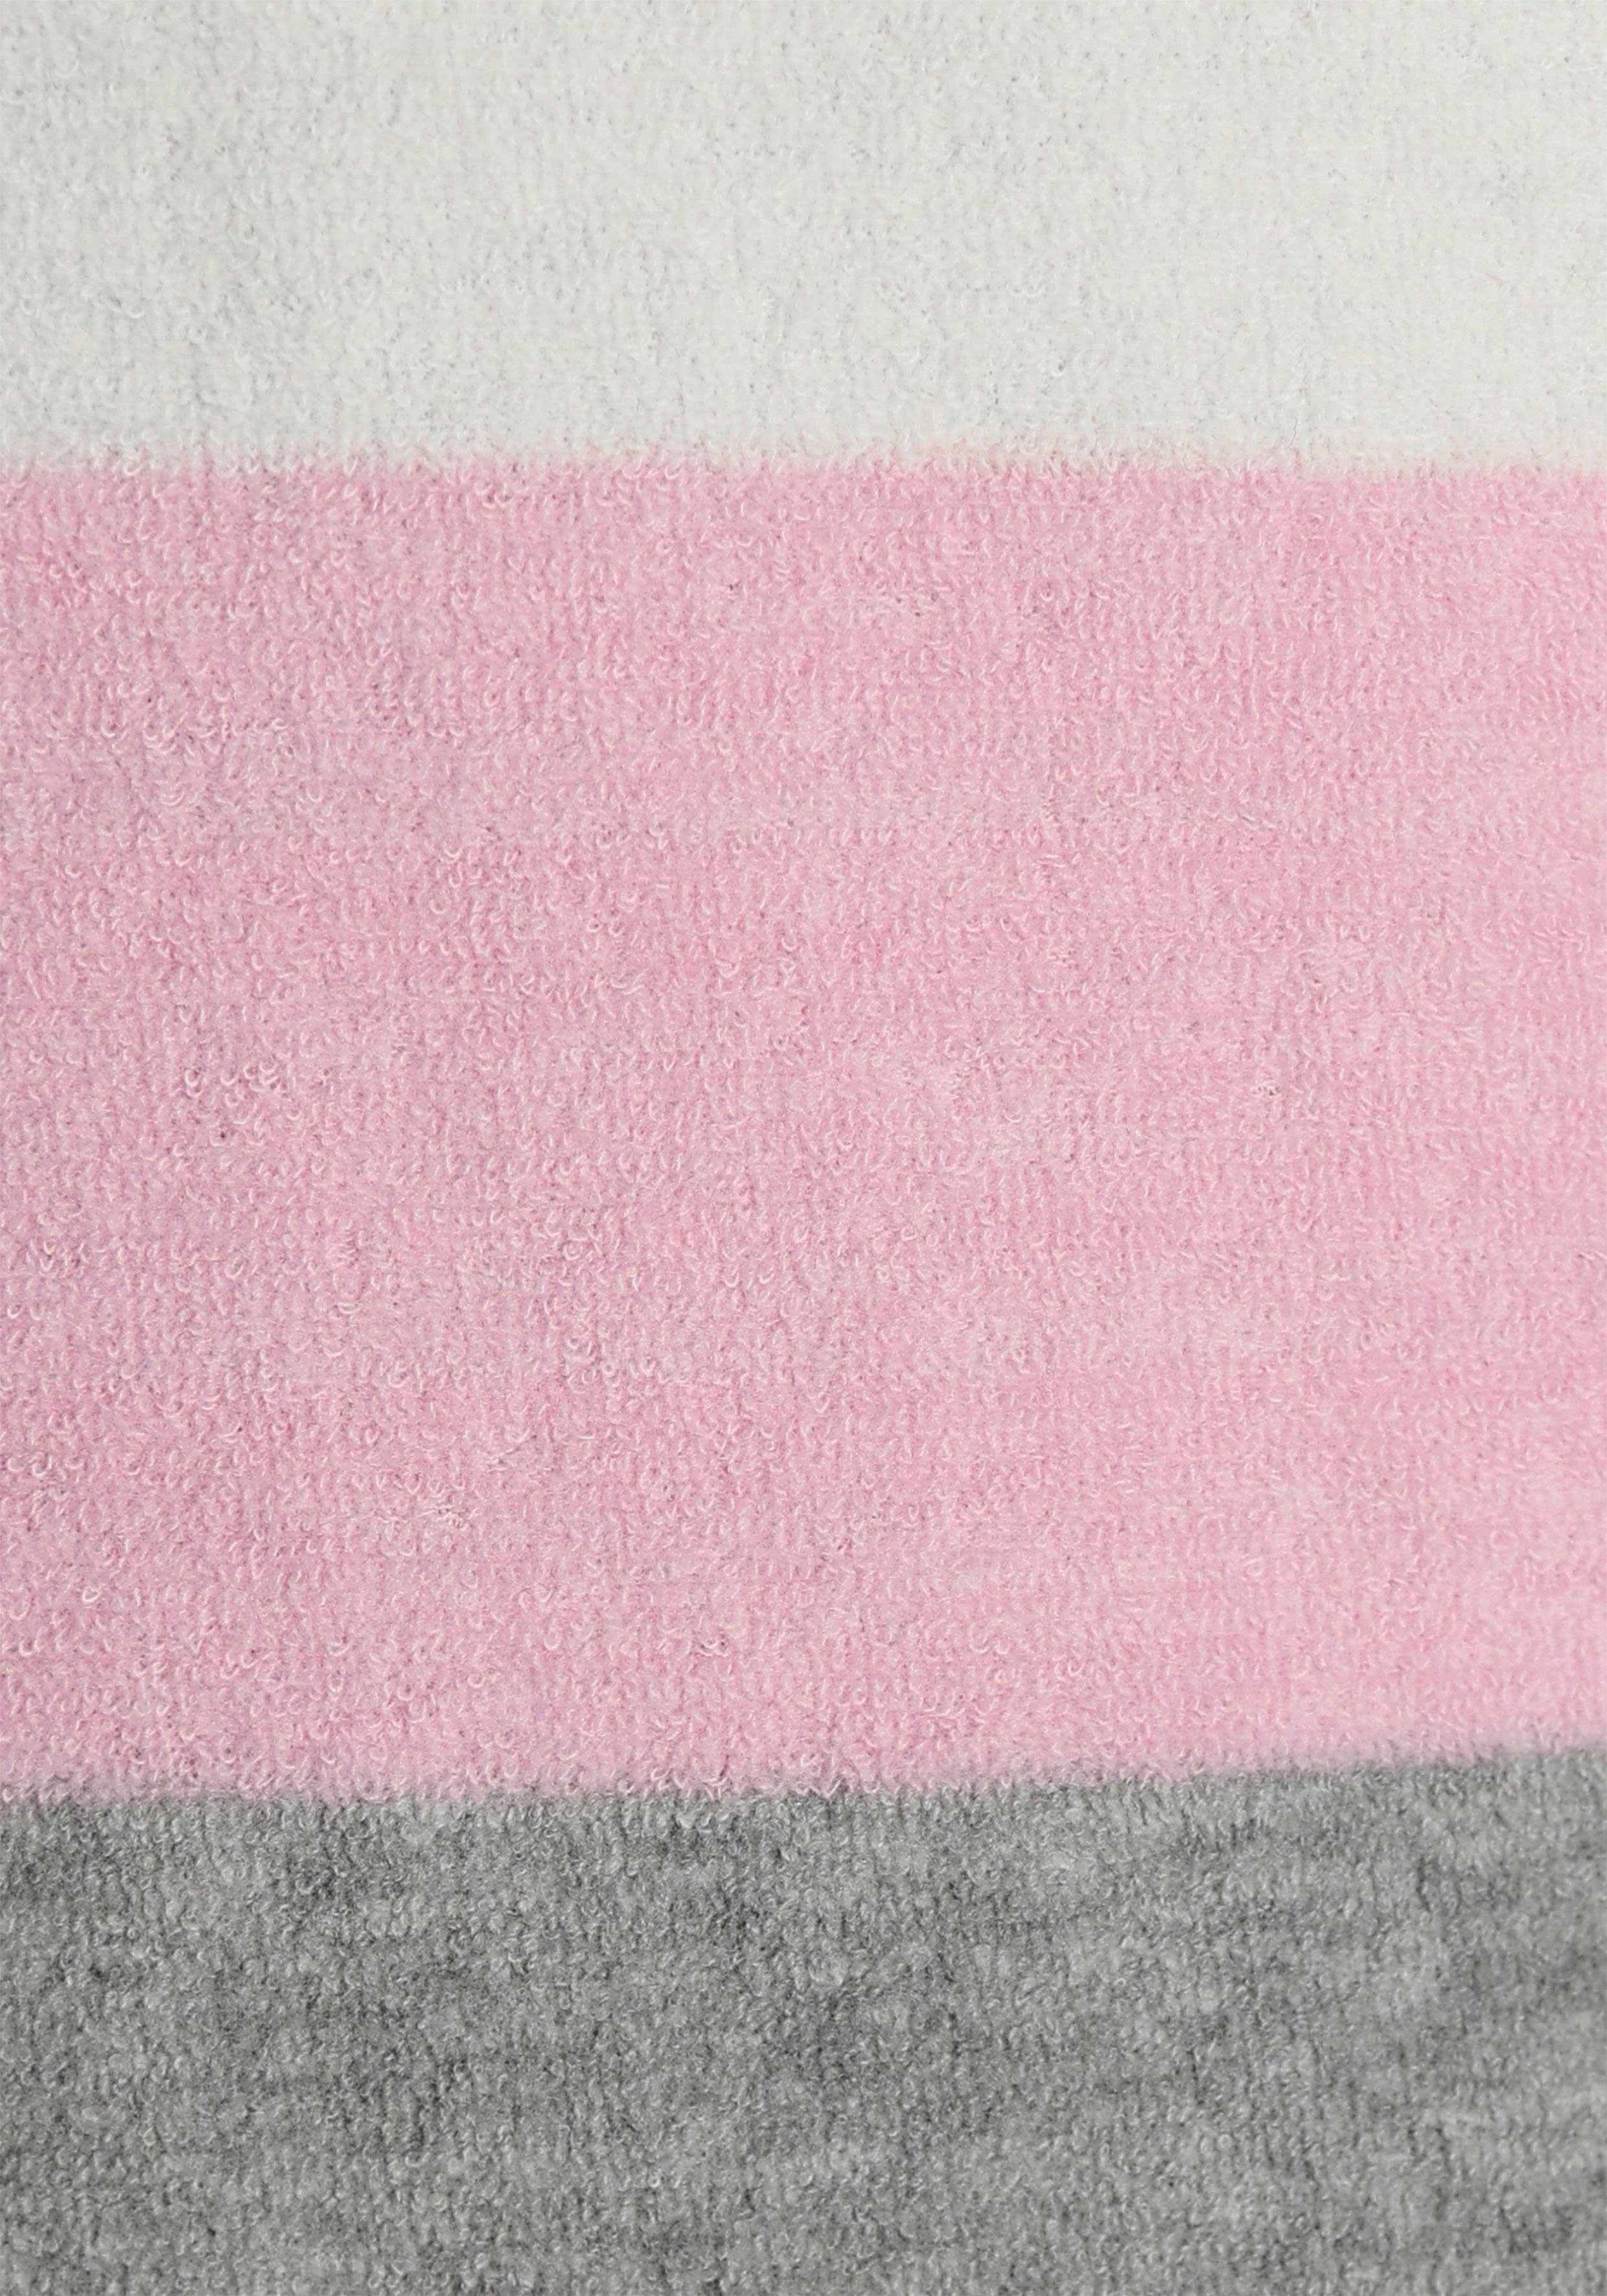 Vivance Dreams Pyjama (2 Colorblock und Frottée aus weichem mit tlg) grau-rosa Streifen